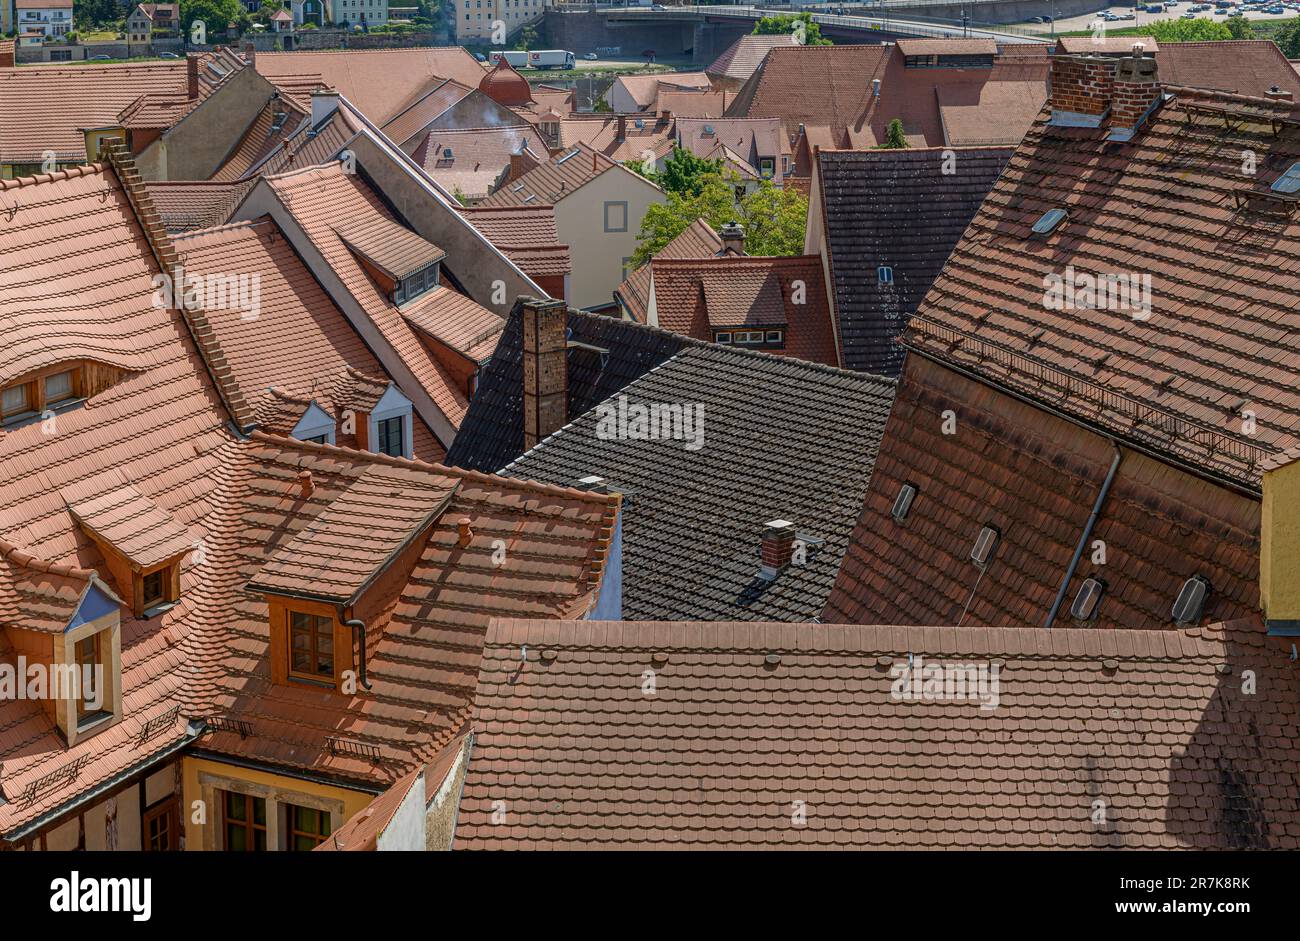 Alta sui tetti della bellissima città di Meissen, vicino a Dresda, in Germania. Quasi tutti i tetti sono la stessa perfetta terracotta. Foto Stock